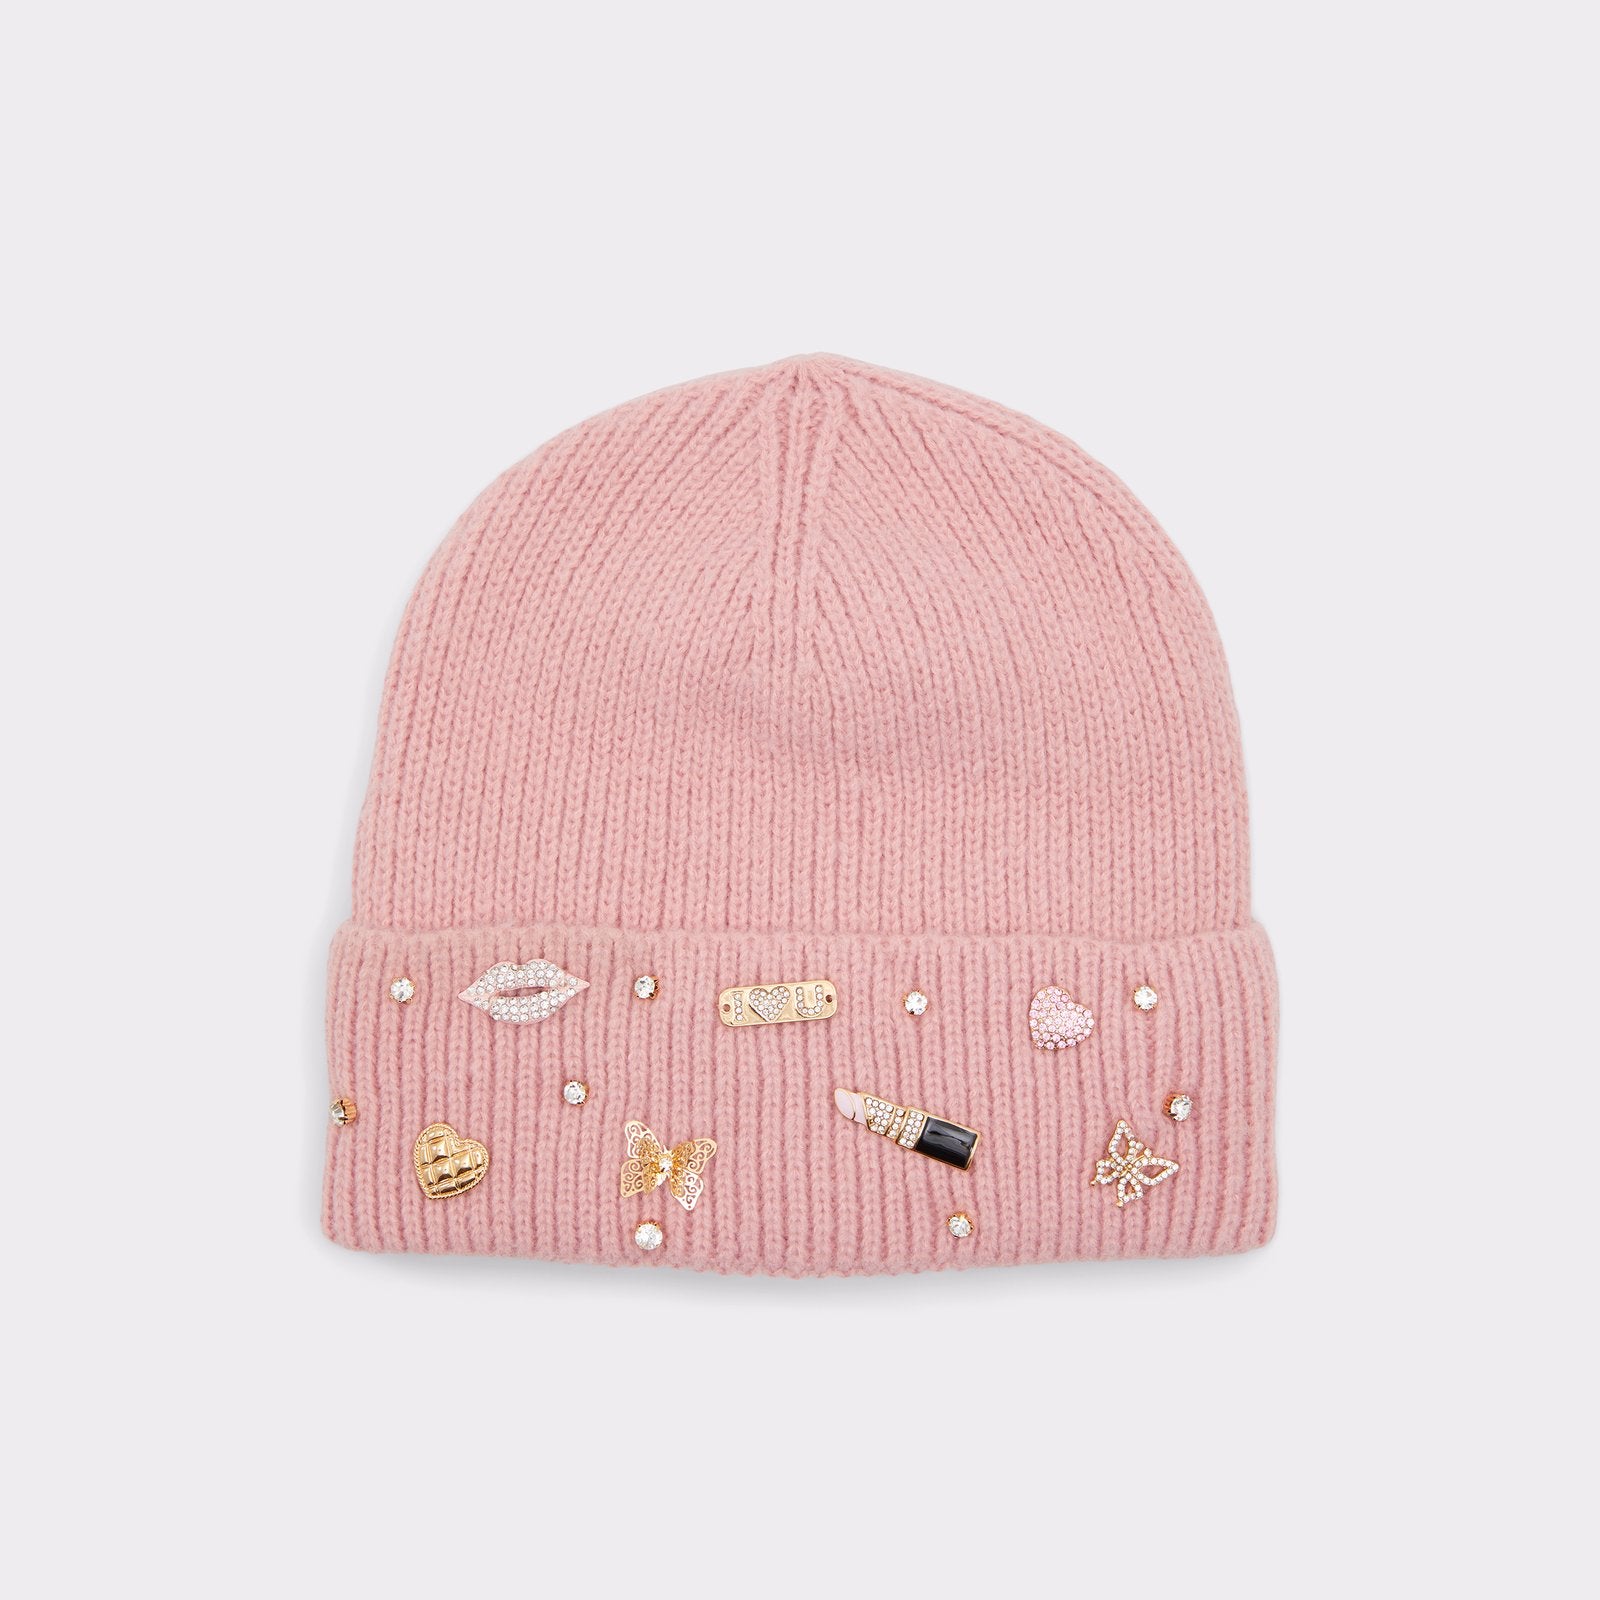 Aldo Women’s Beanie Hat Labeanie (Light Pink)